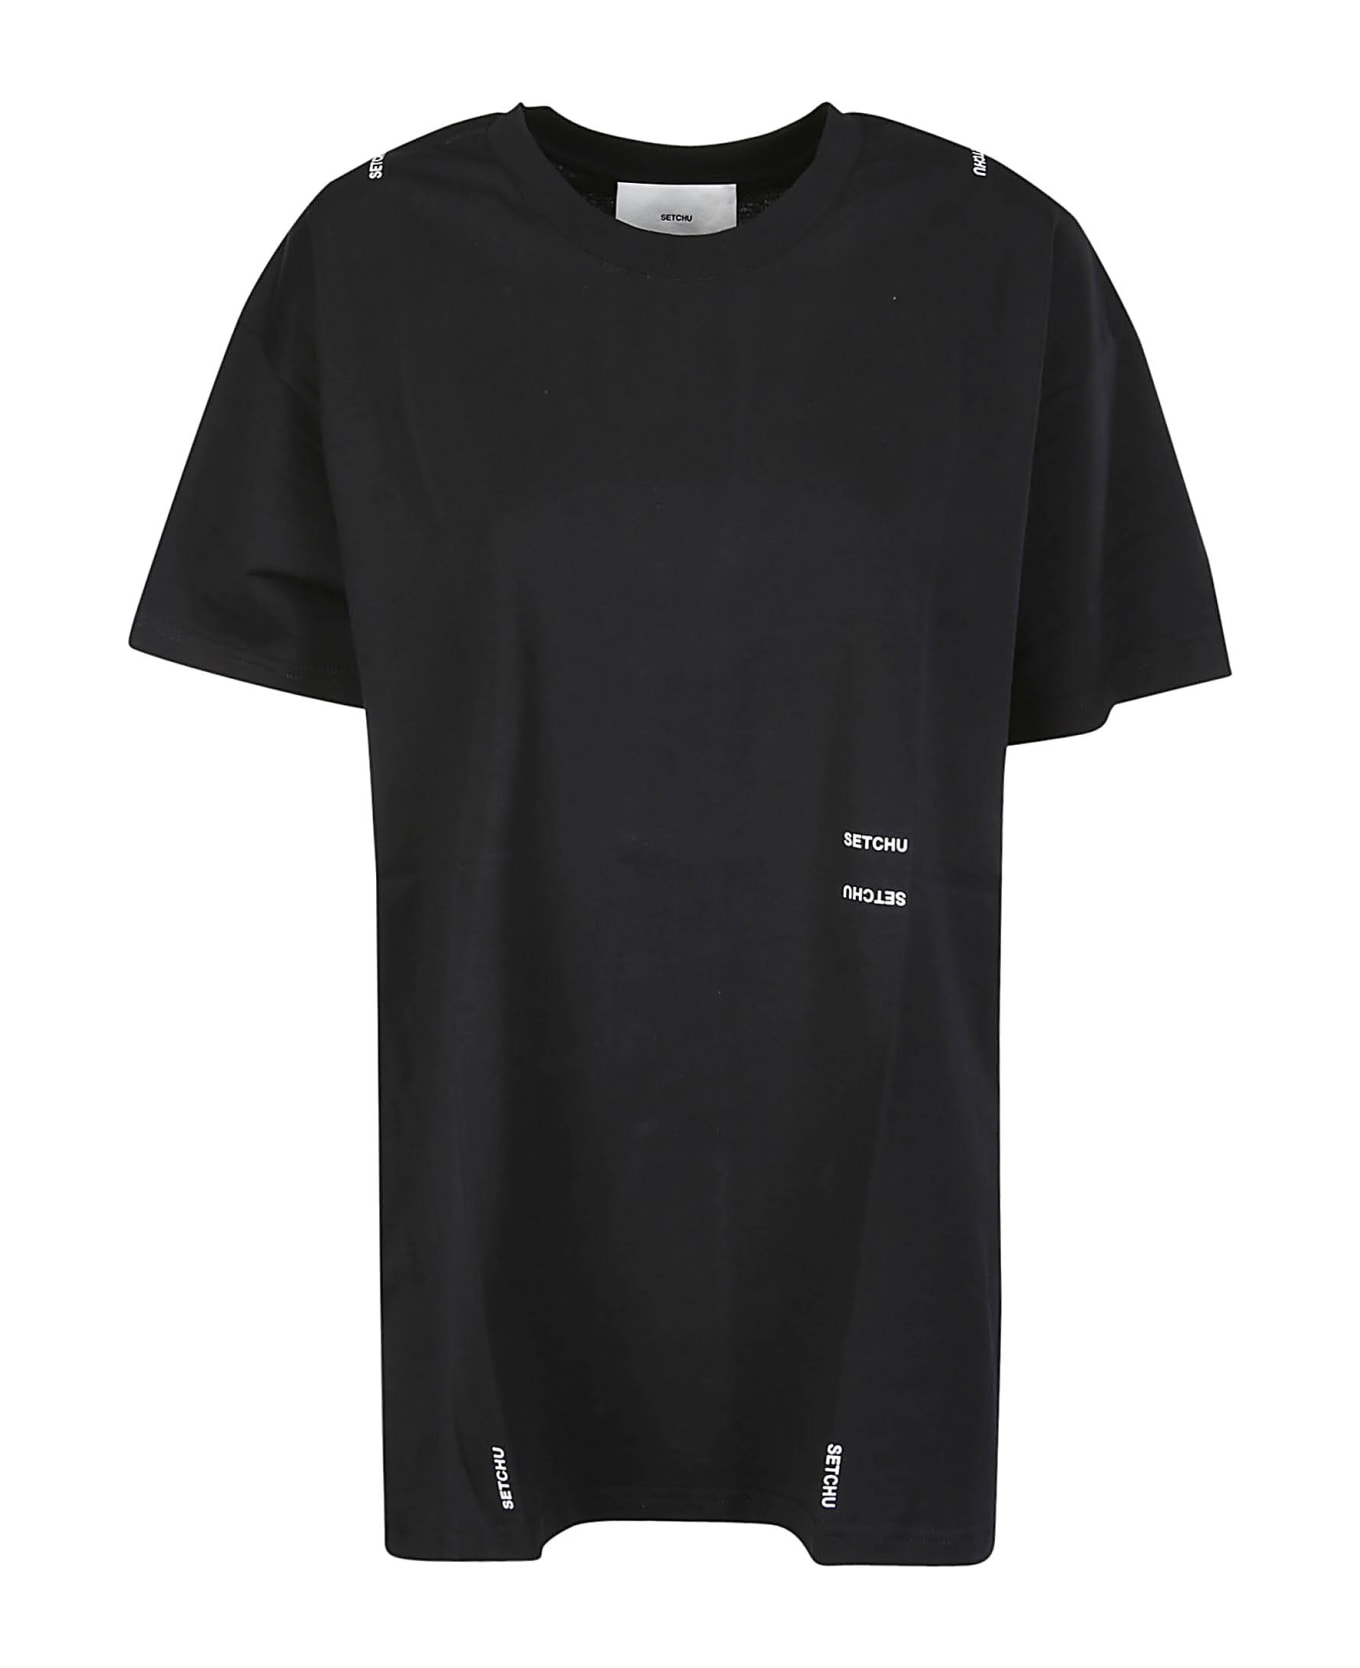 Setchu Origami T-shirt - BLACK